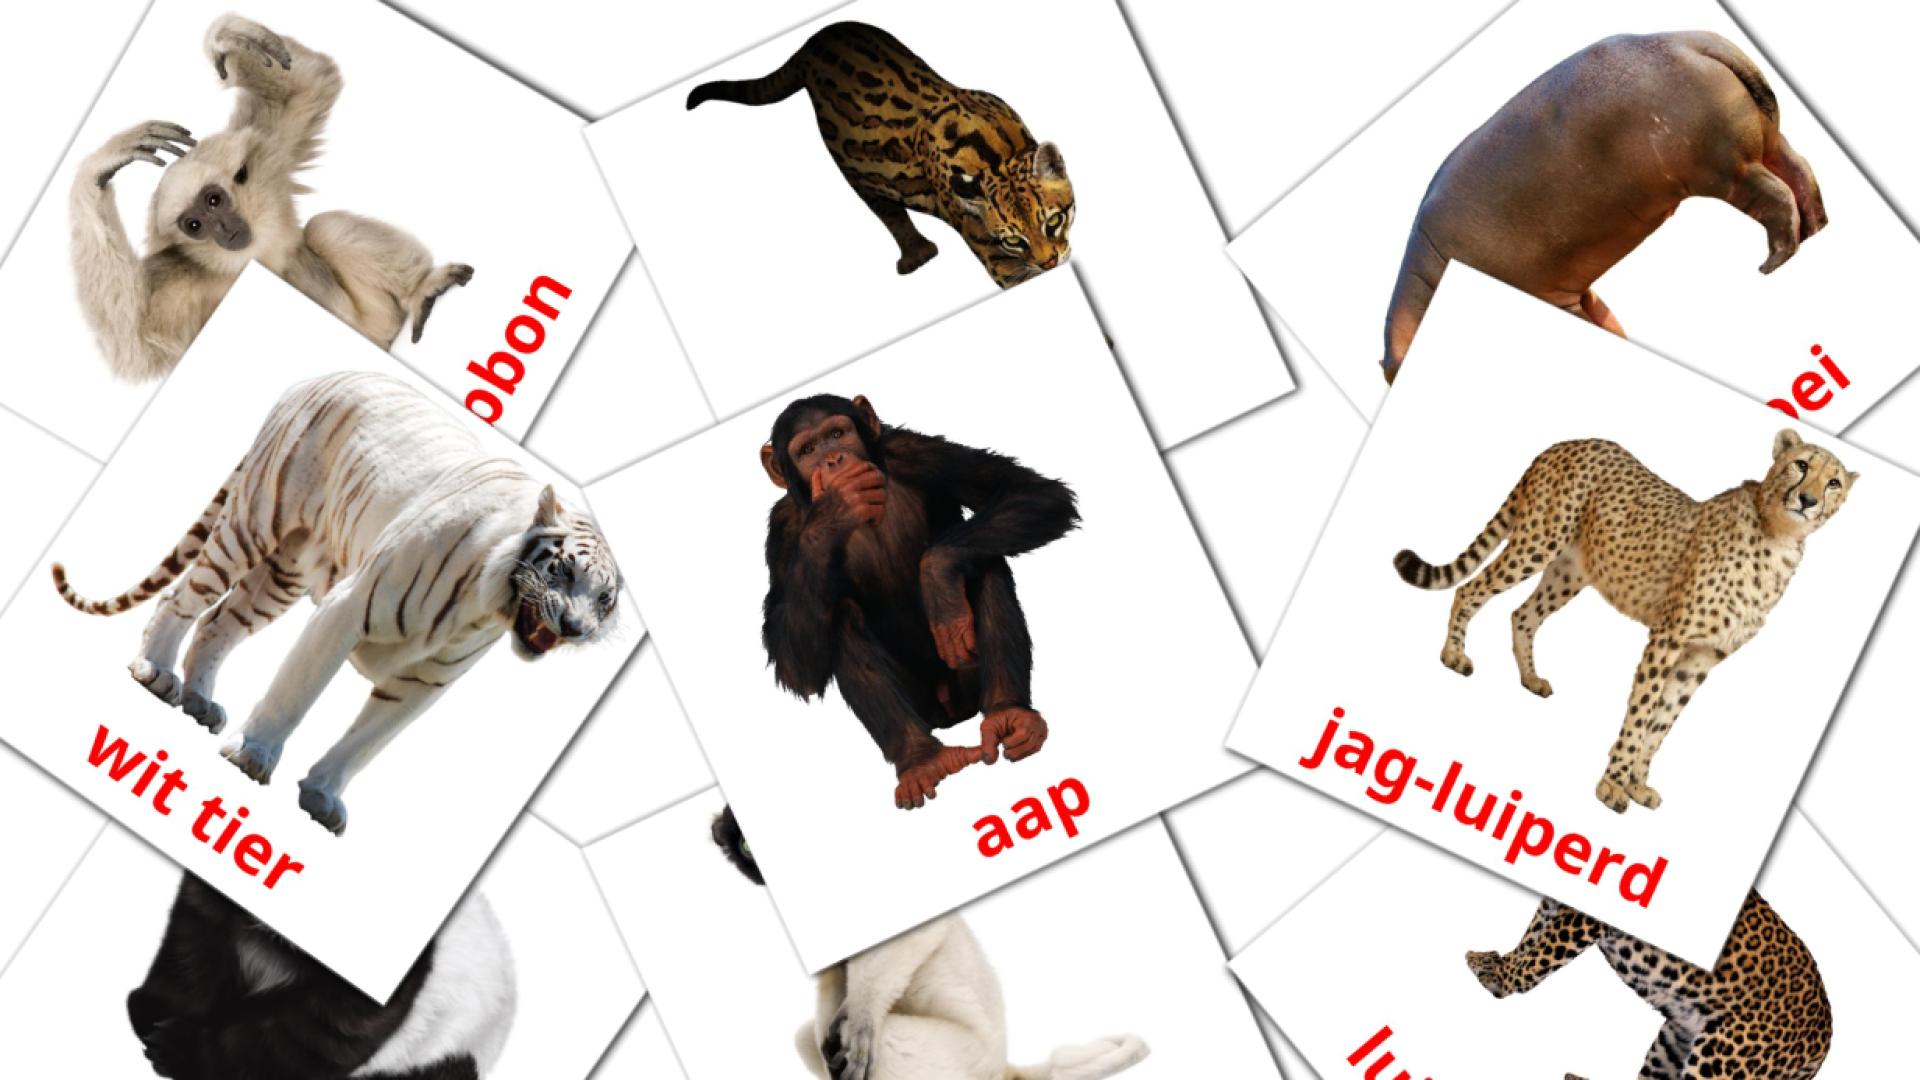 Dschungel Tiere - Afrikaans Vokabelkarten